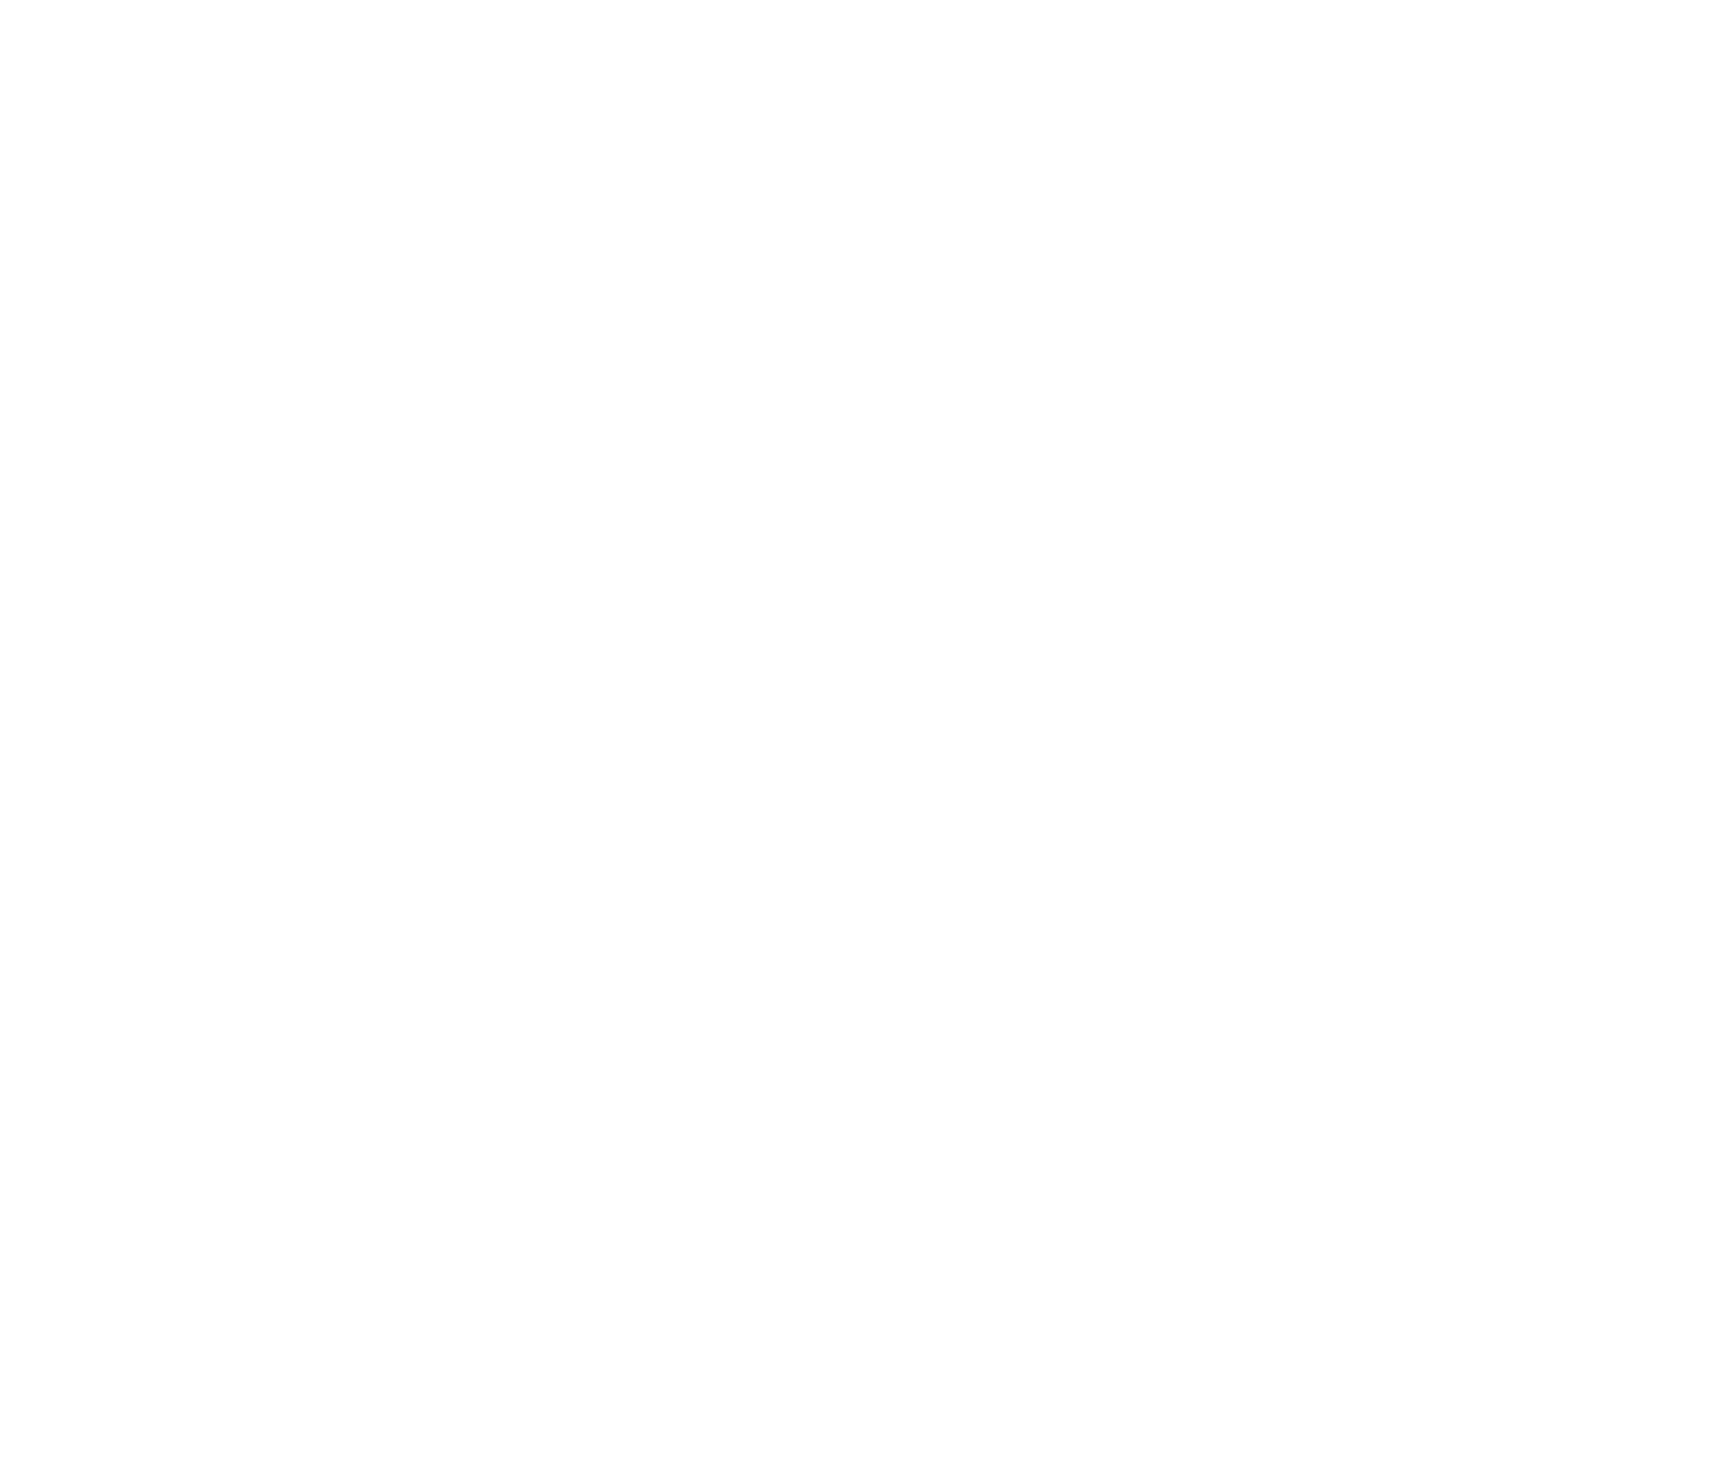 50 Jahre Wien Holding